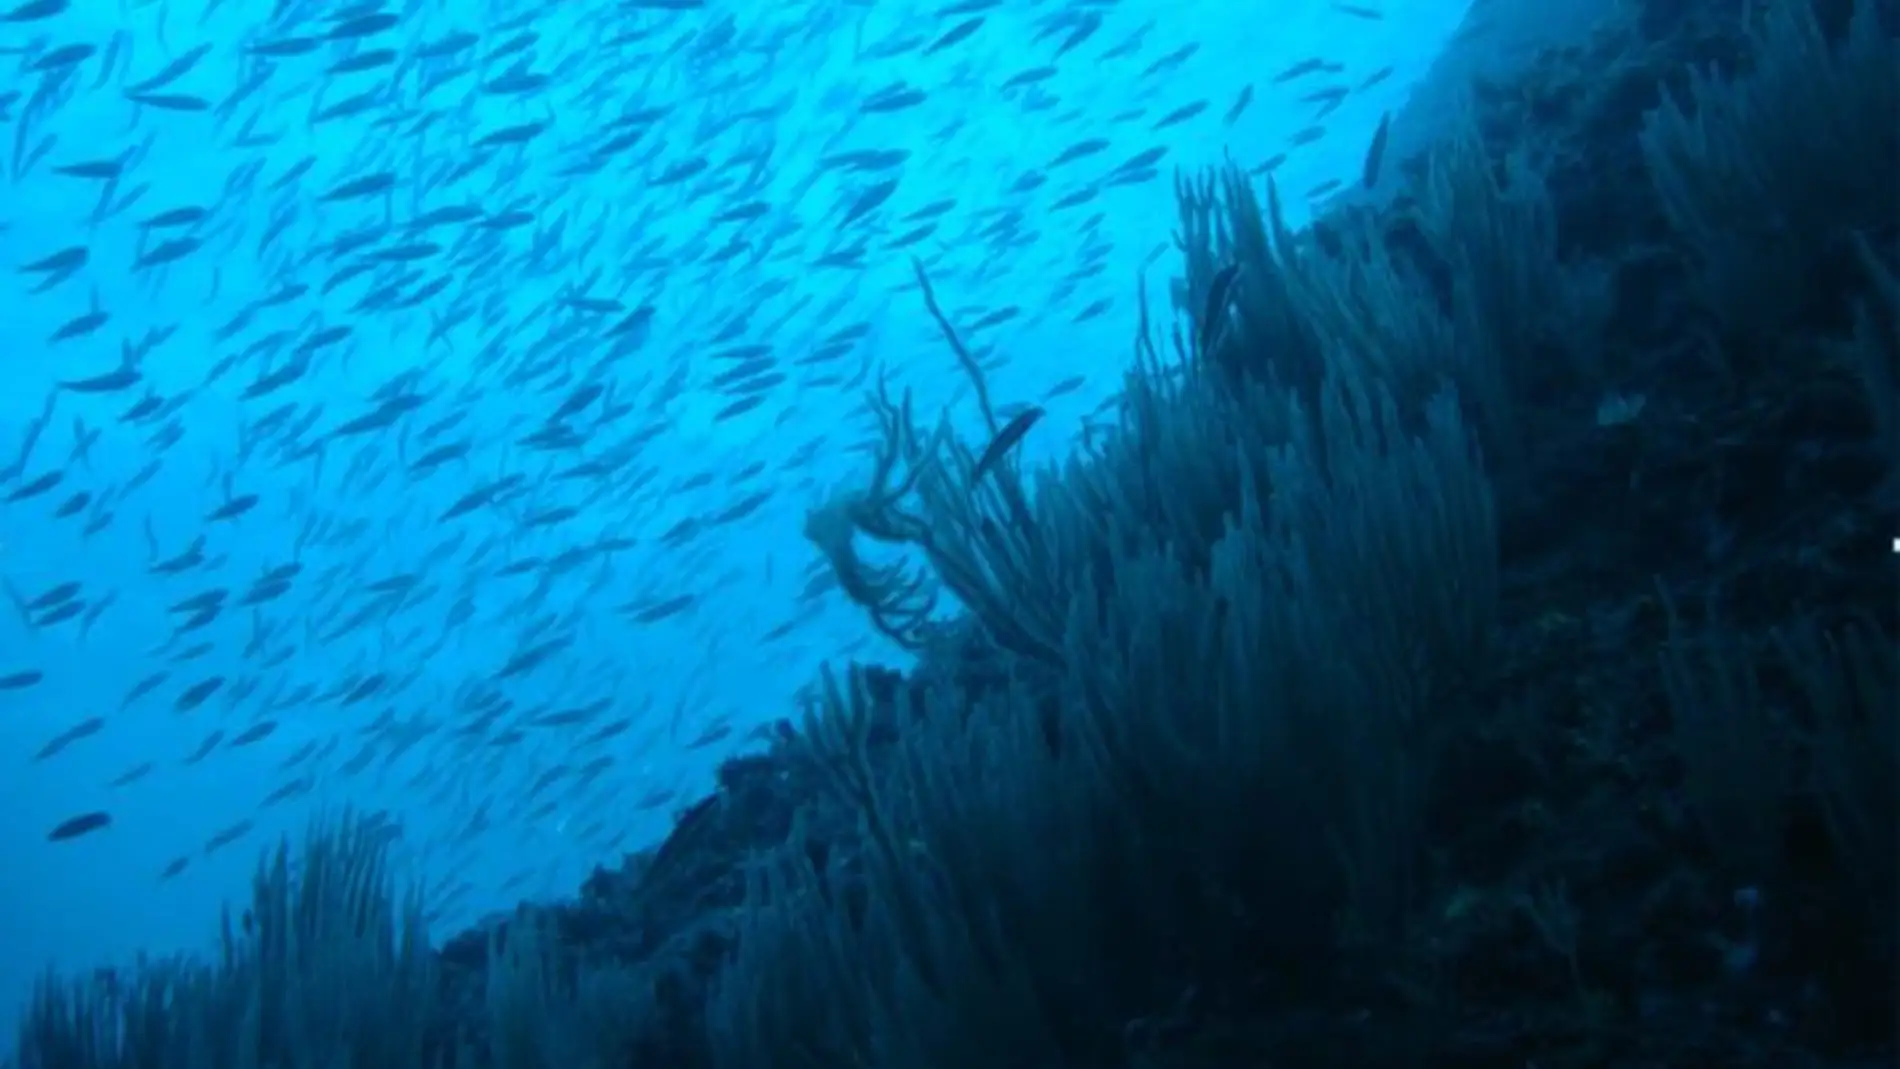 El 17 de la biomasa de especies marinas podria reducirse por el cambio climatico